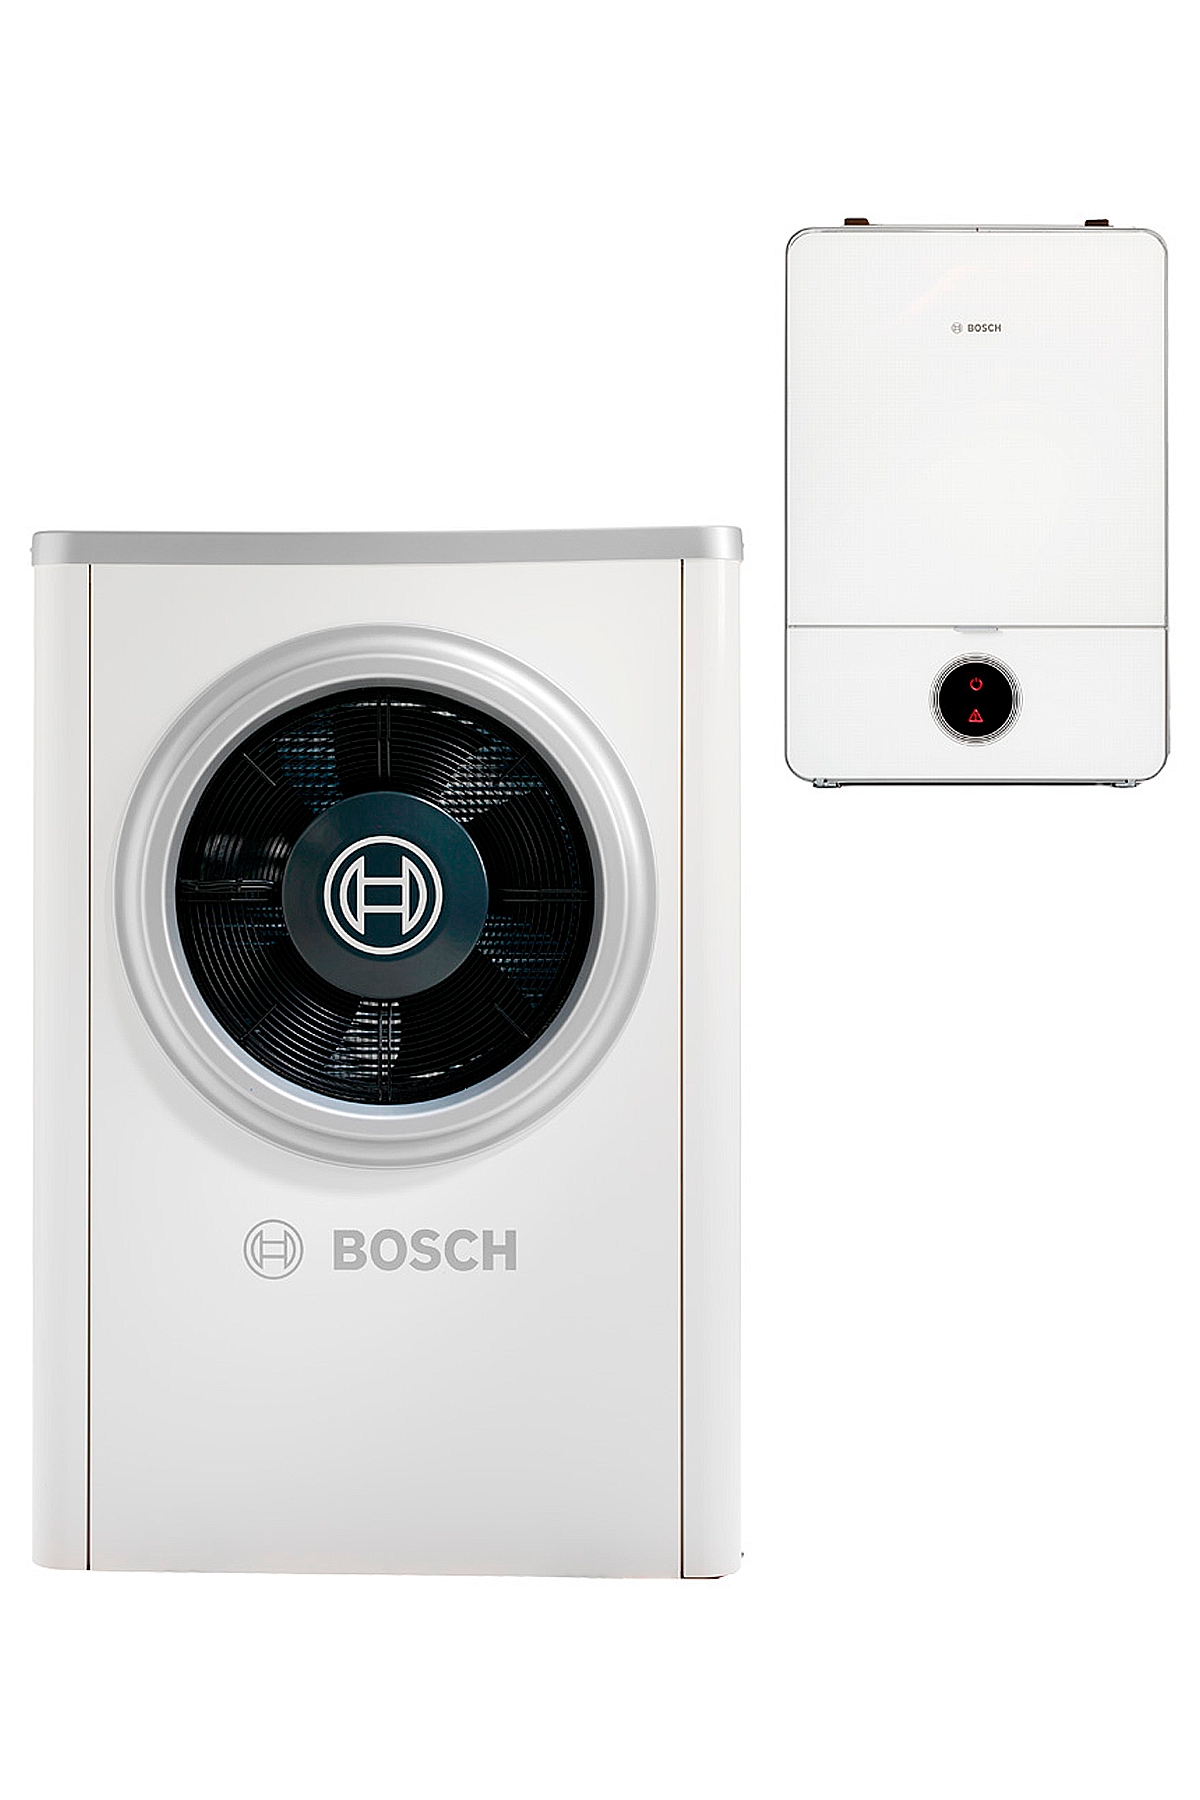 Цена тепловой насос Bosch Compress 7000i AW 7 B в Черновцах